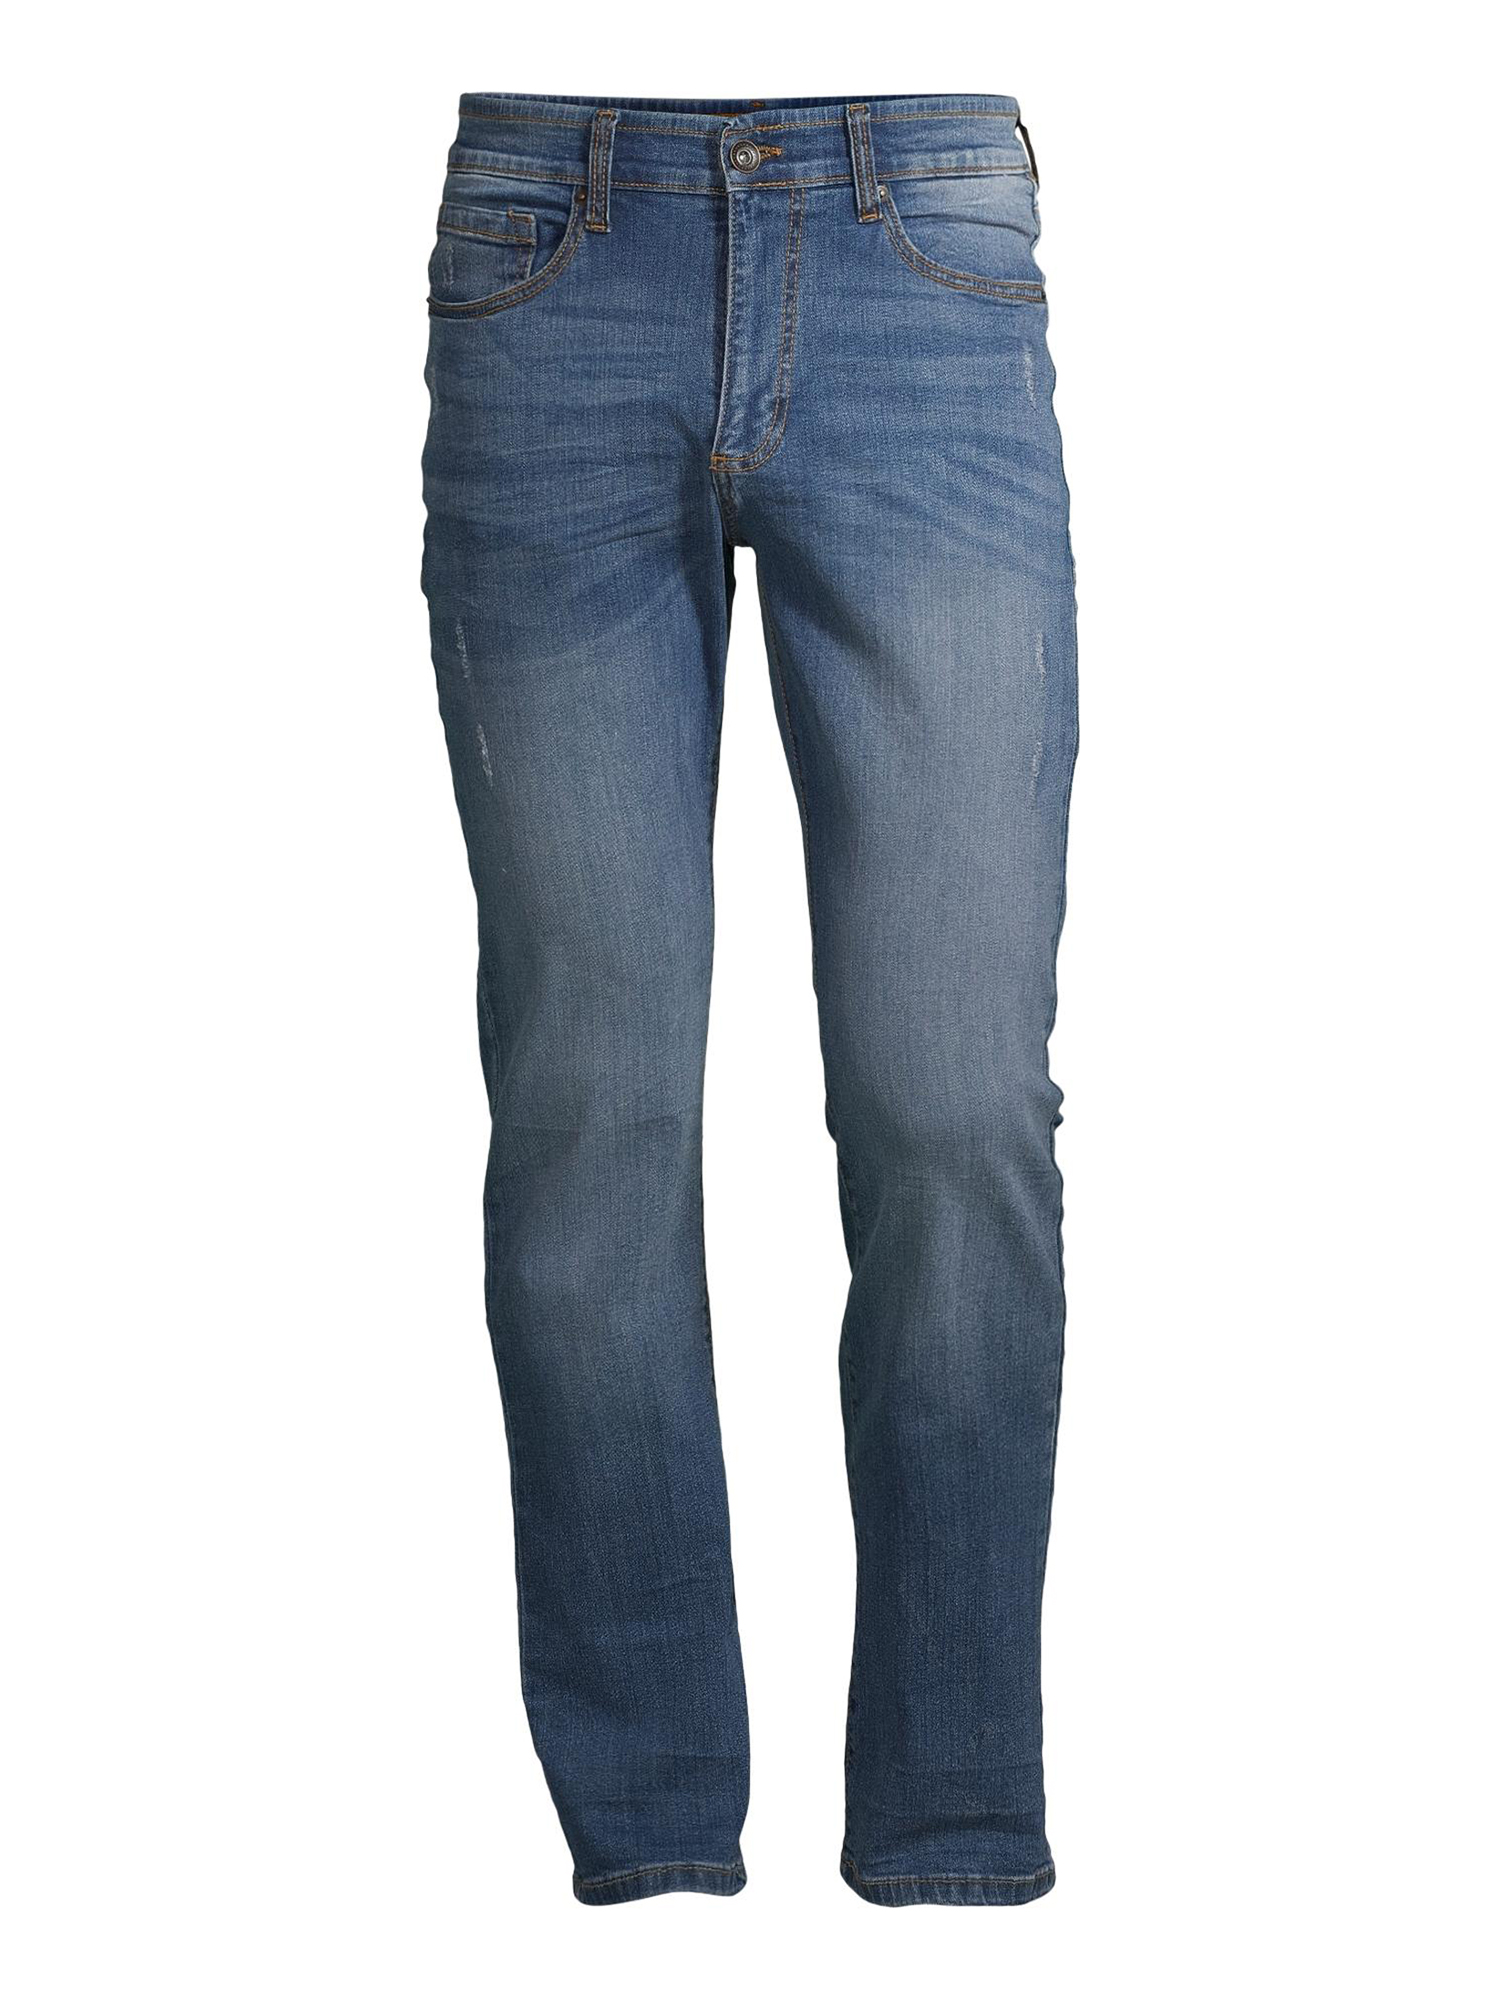 Lazer Men's Flex Denim Bootcut Jeans, Waist Sizes 29"-38", Bootcut Mens Jeans - image 2 of 3